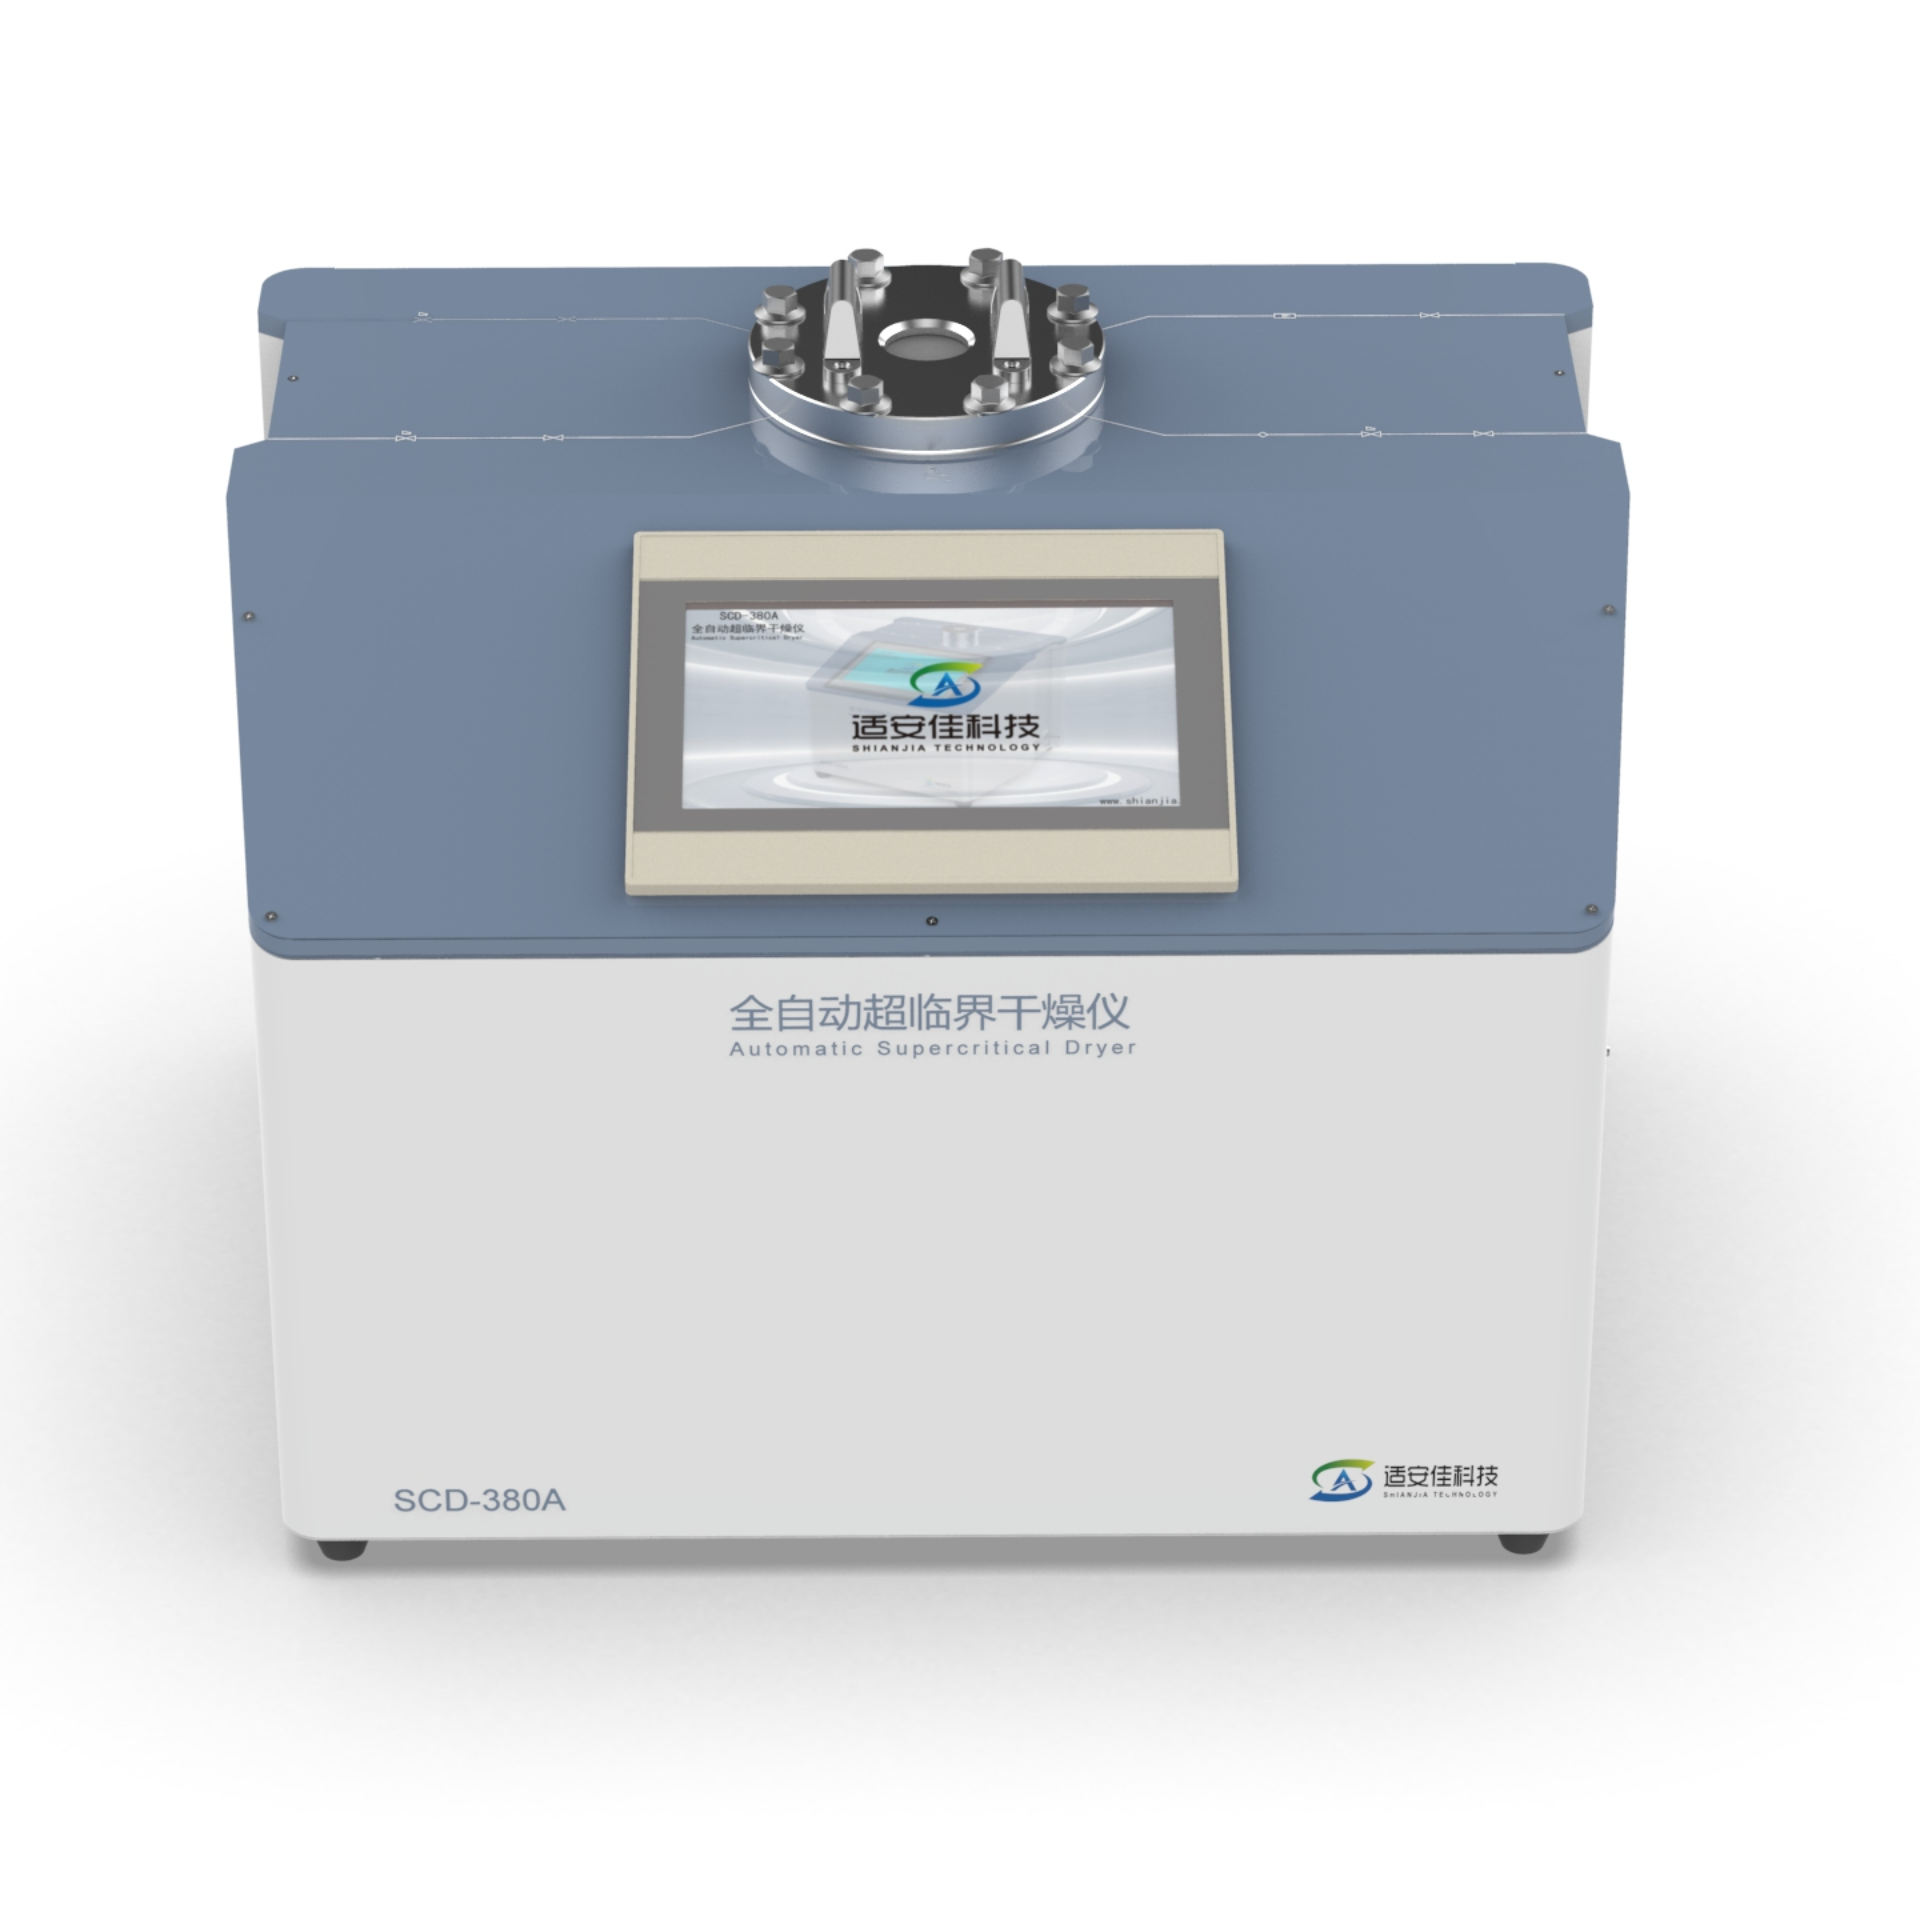 超临界干燥仪SCD-380A-适安佳-新品